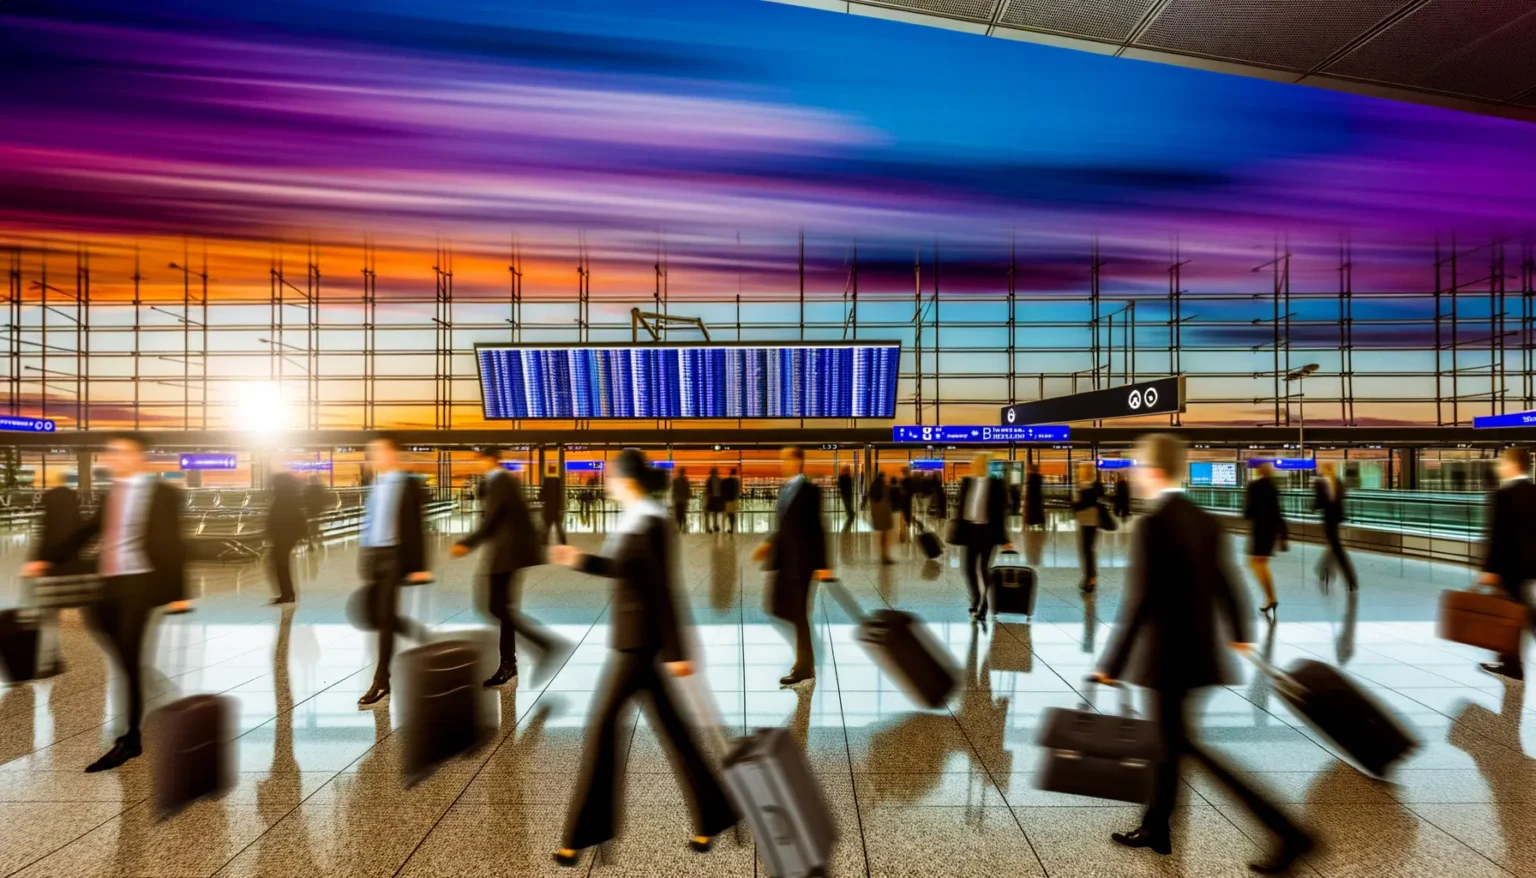 Bewegte Menschen mit Koffern auf einem belebten Bahnhof mit einer großen Anzeigetafel für Abfahrtszeiten im Hintergrund, die den Eindruck von Eile und Geschäftigkeit vermitteln, während der Himmel durch das große Fenster in dynamischen Orange- und Violetttönen leuchtet.